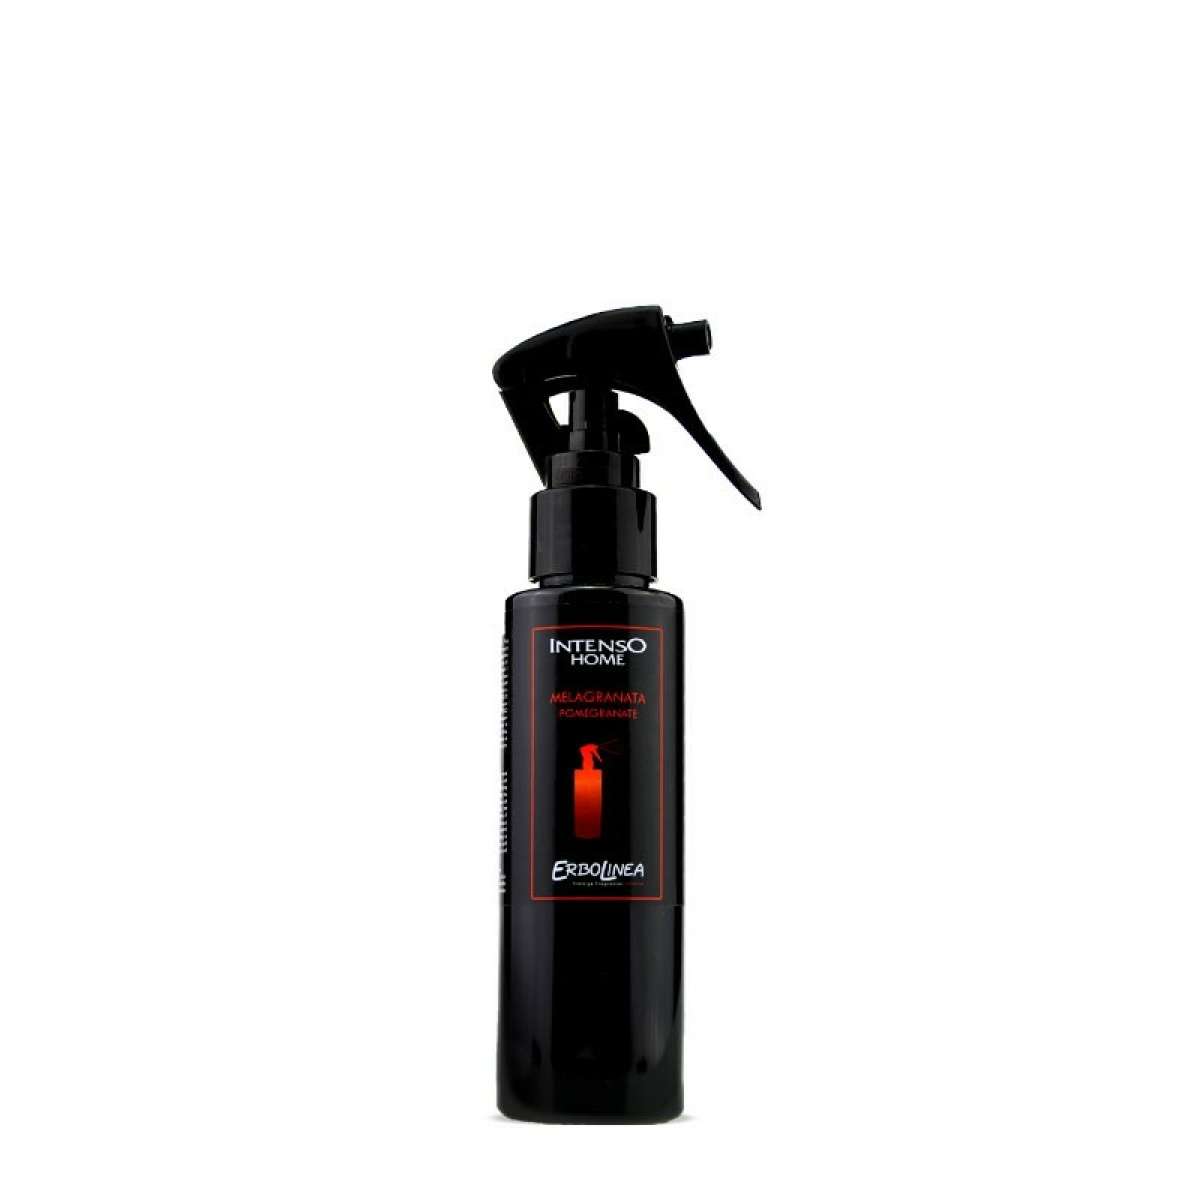 Immagine del prodotto Home Spray per Ambiente Melagranata 100 ml | Erbolinea